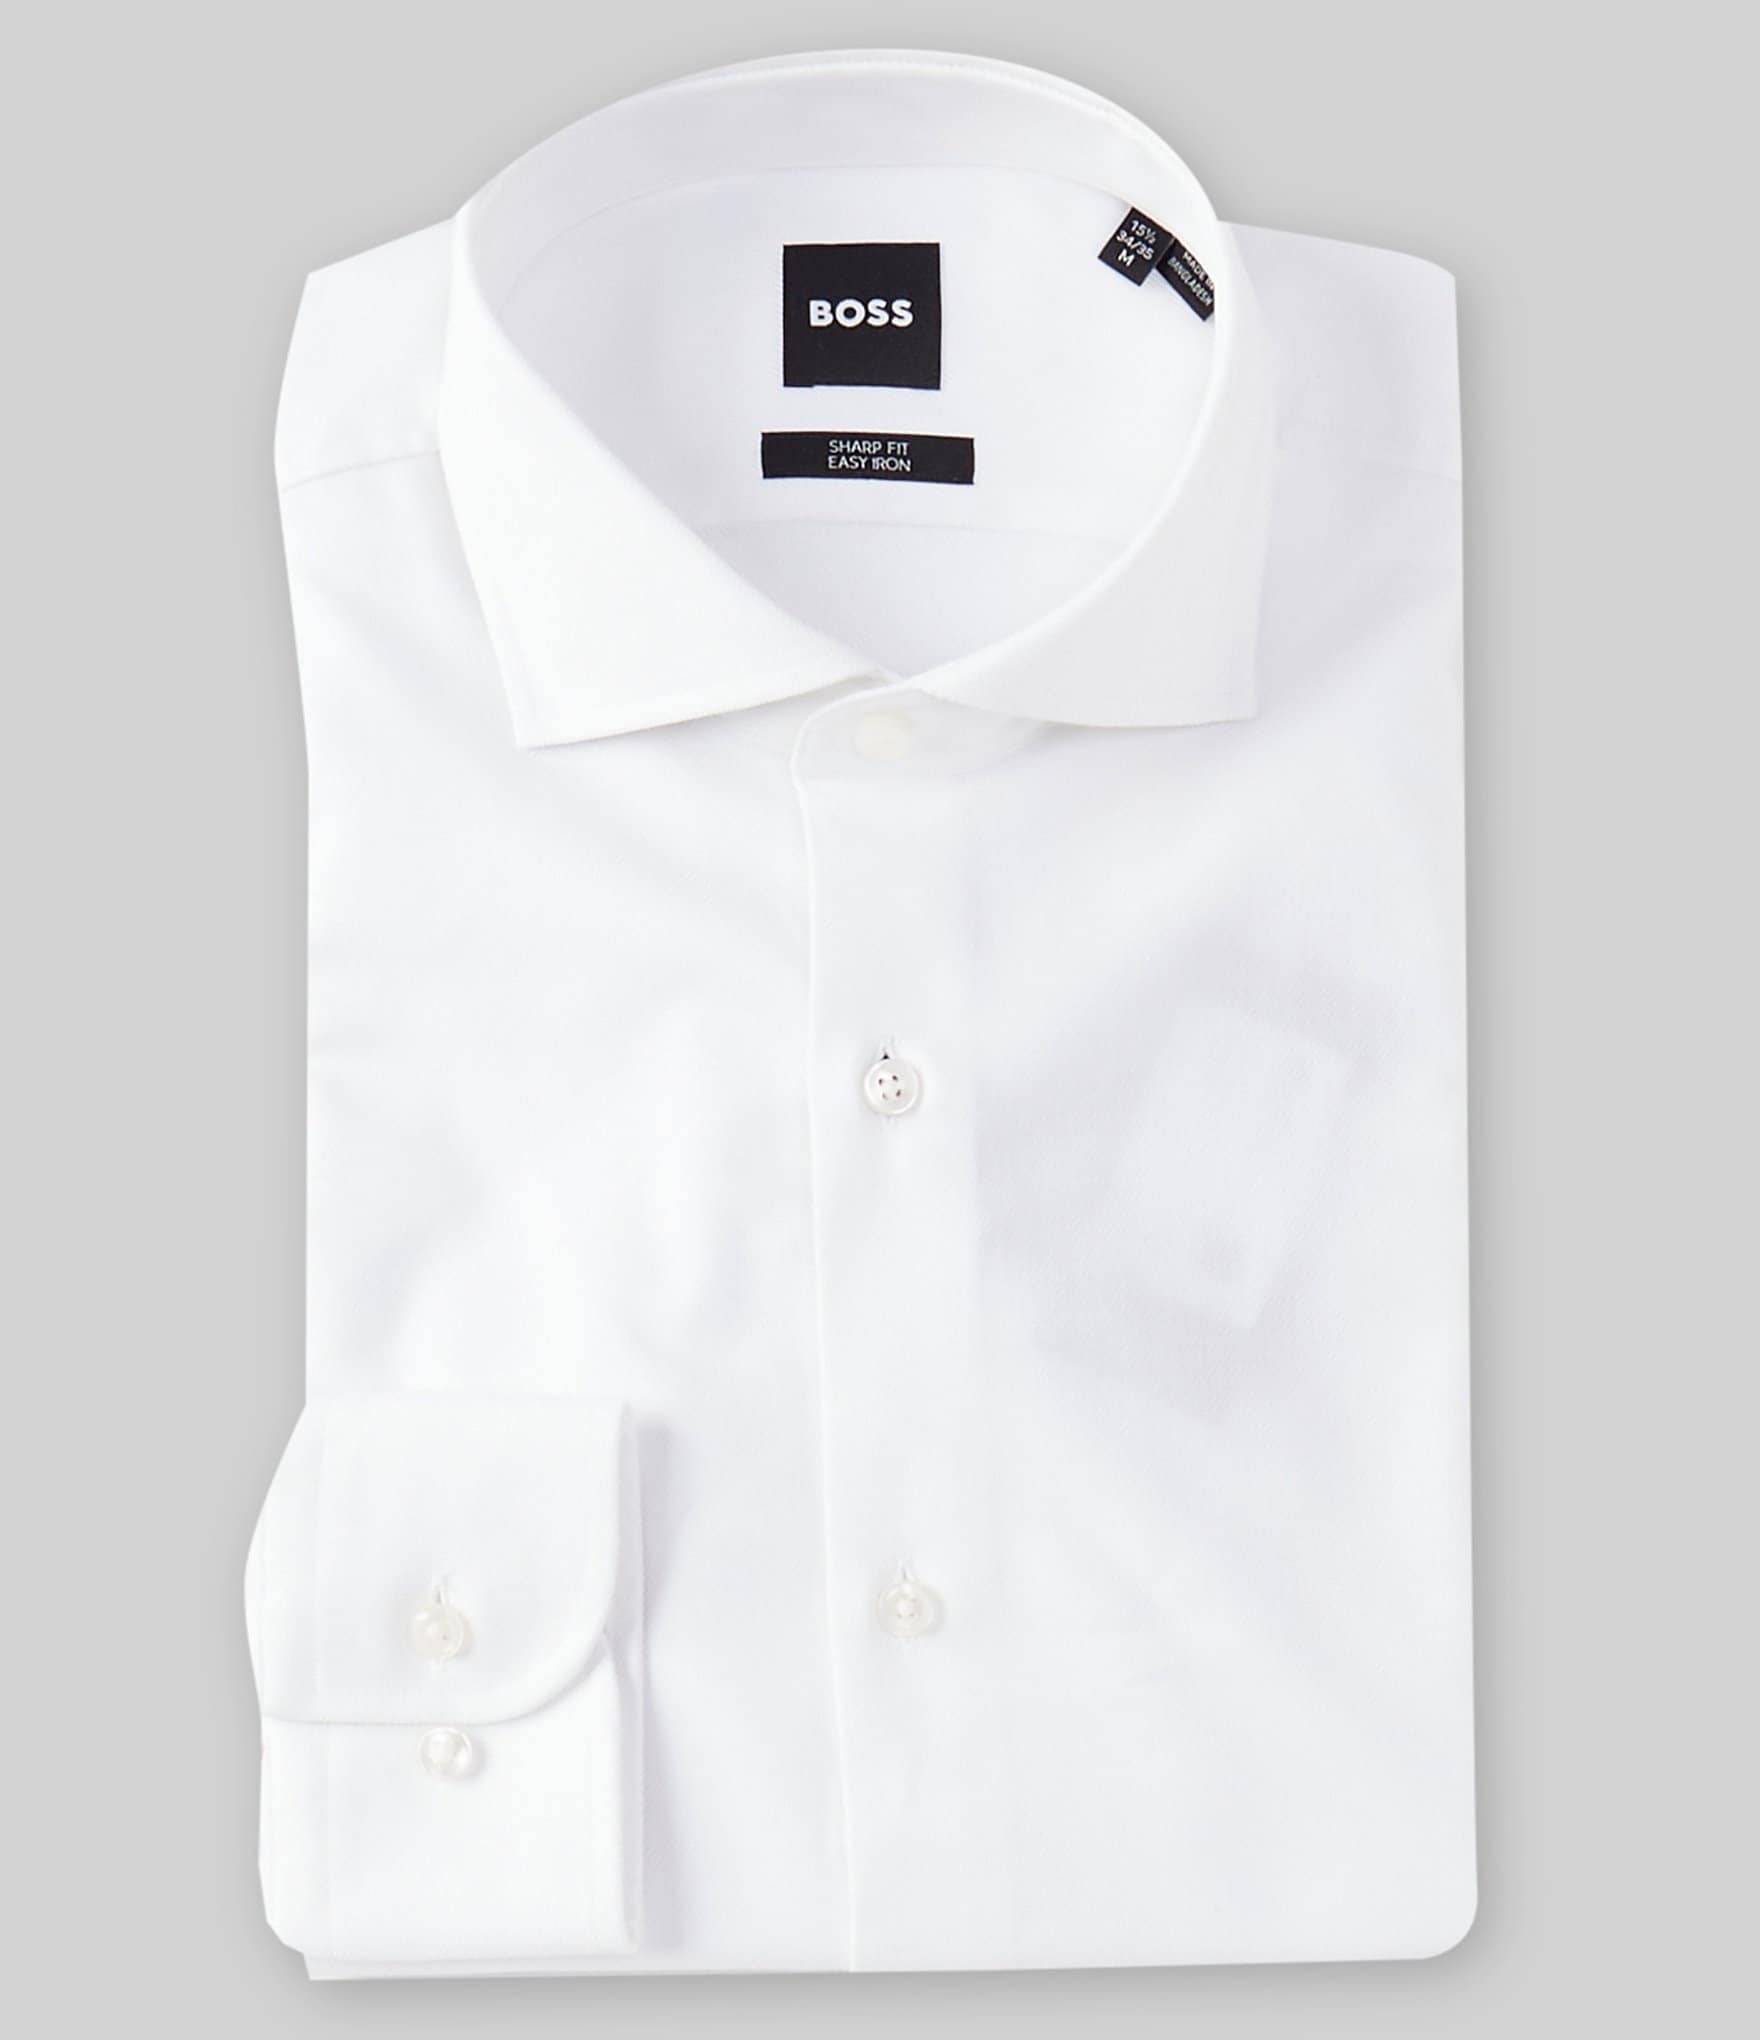 Buy BOSS Super-Flex Shirt with Cut-Away Collar